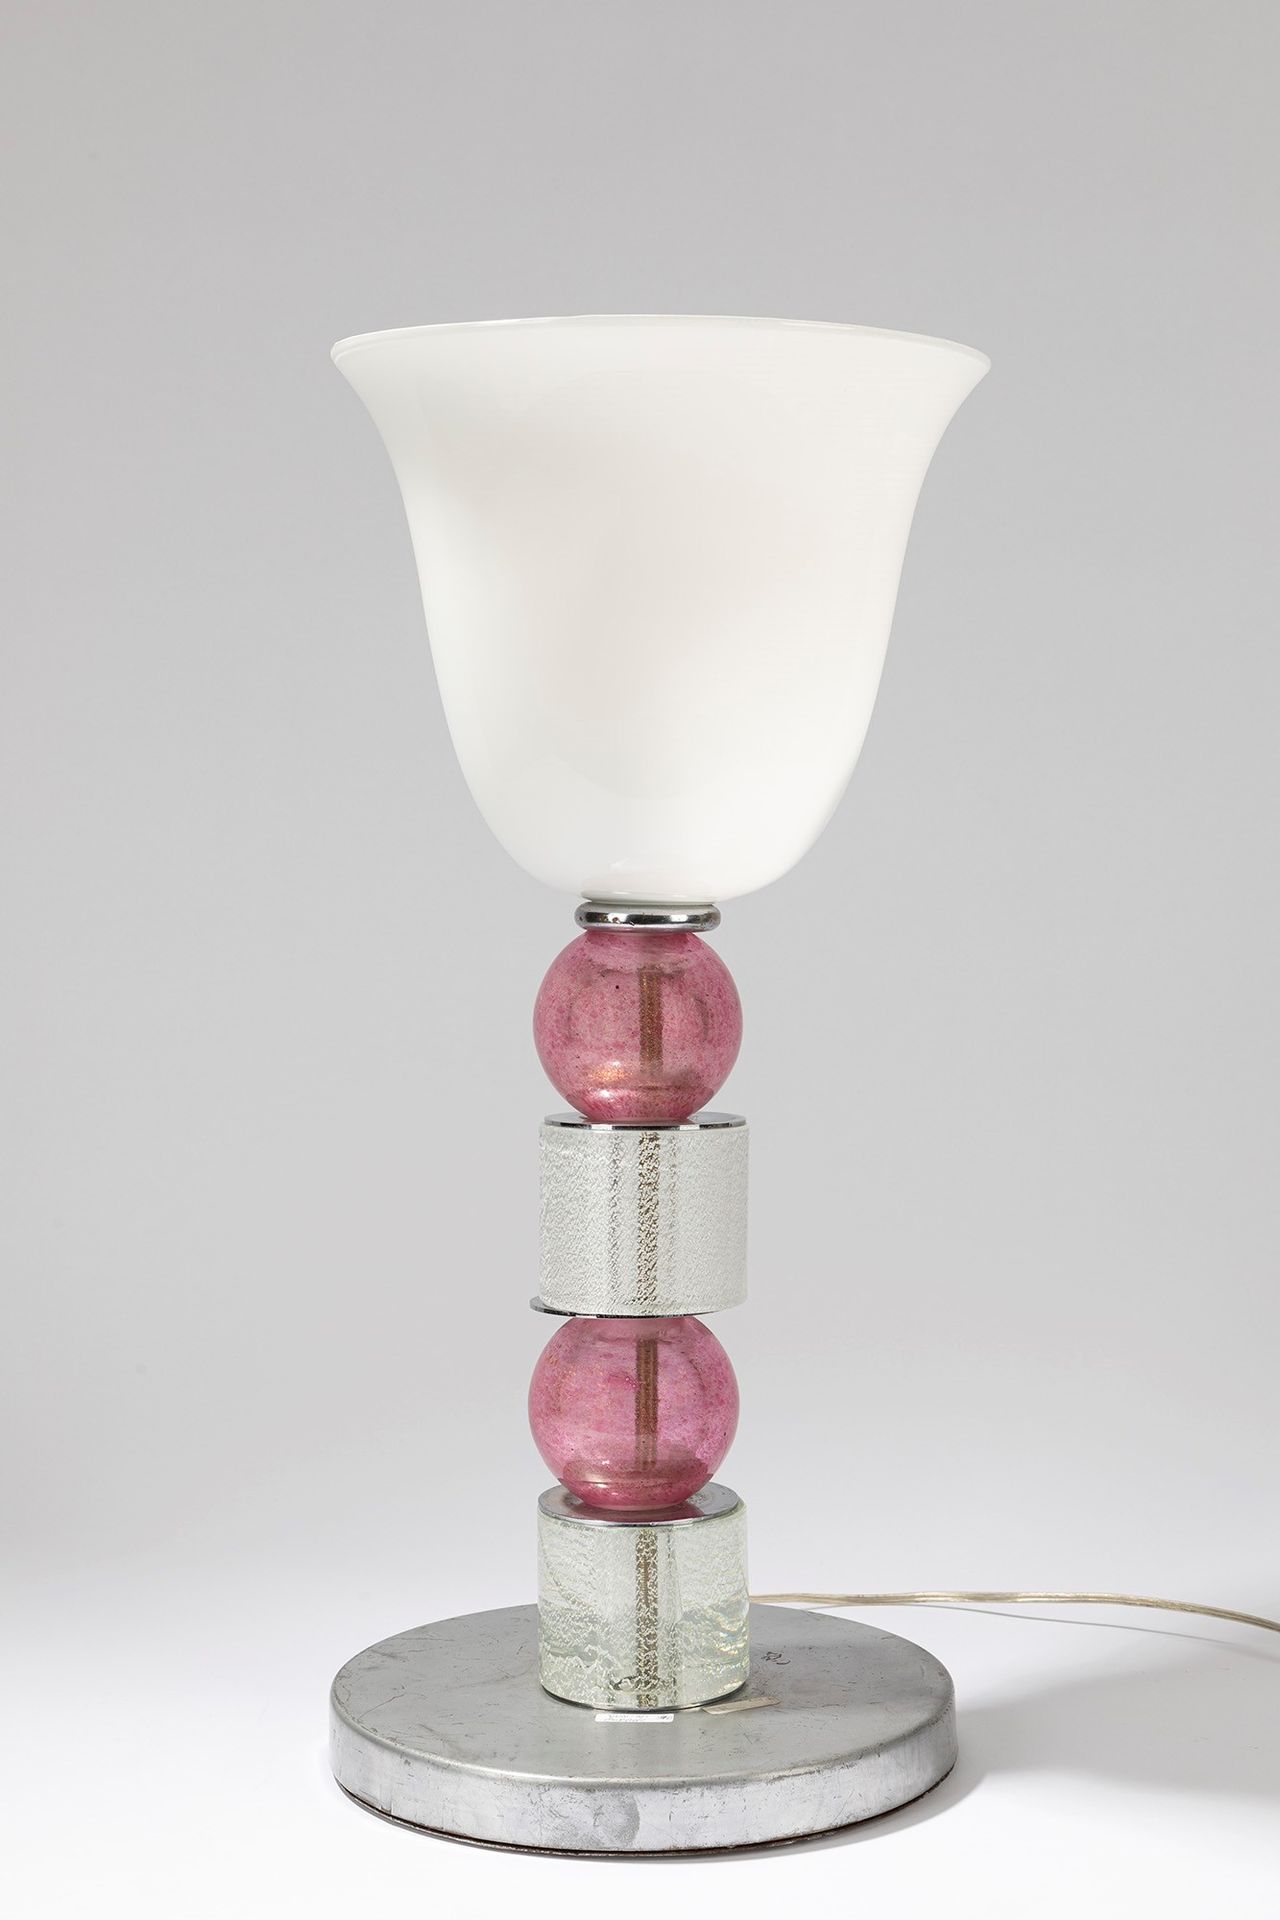 ITALIAN MANUFACTURE Tischlampe, 40er Jahre

dm cm 26 x H cm 56.
Geblasenes Glas.